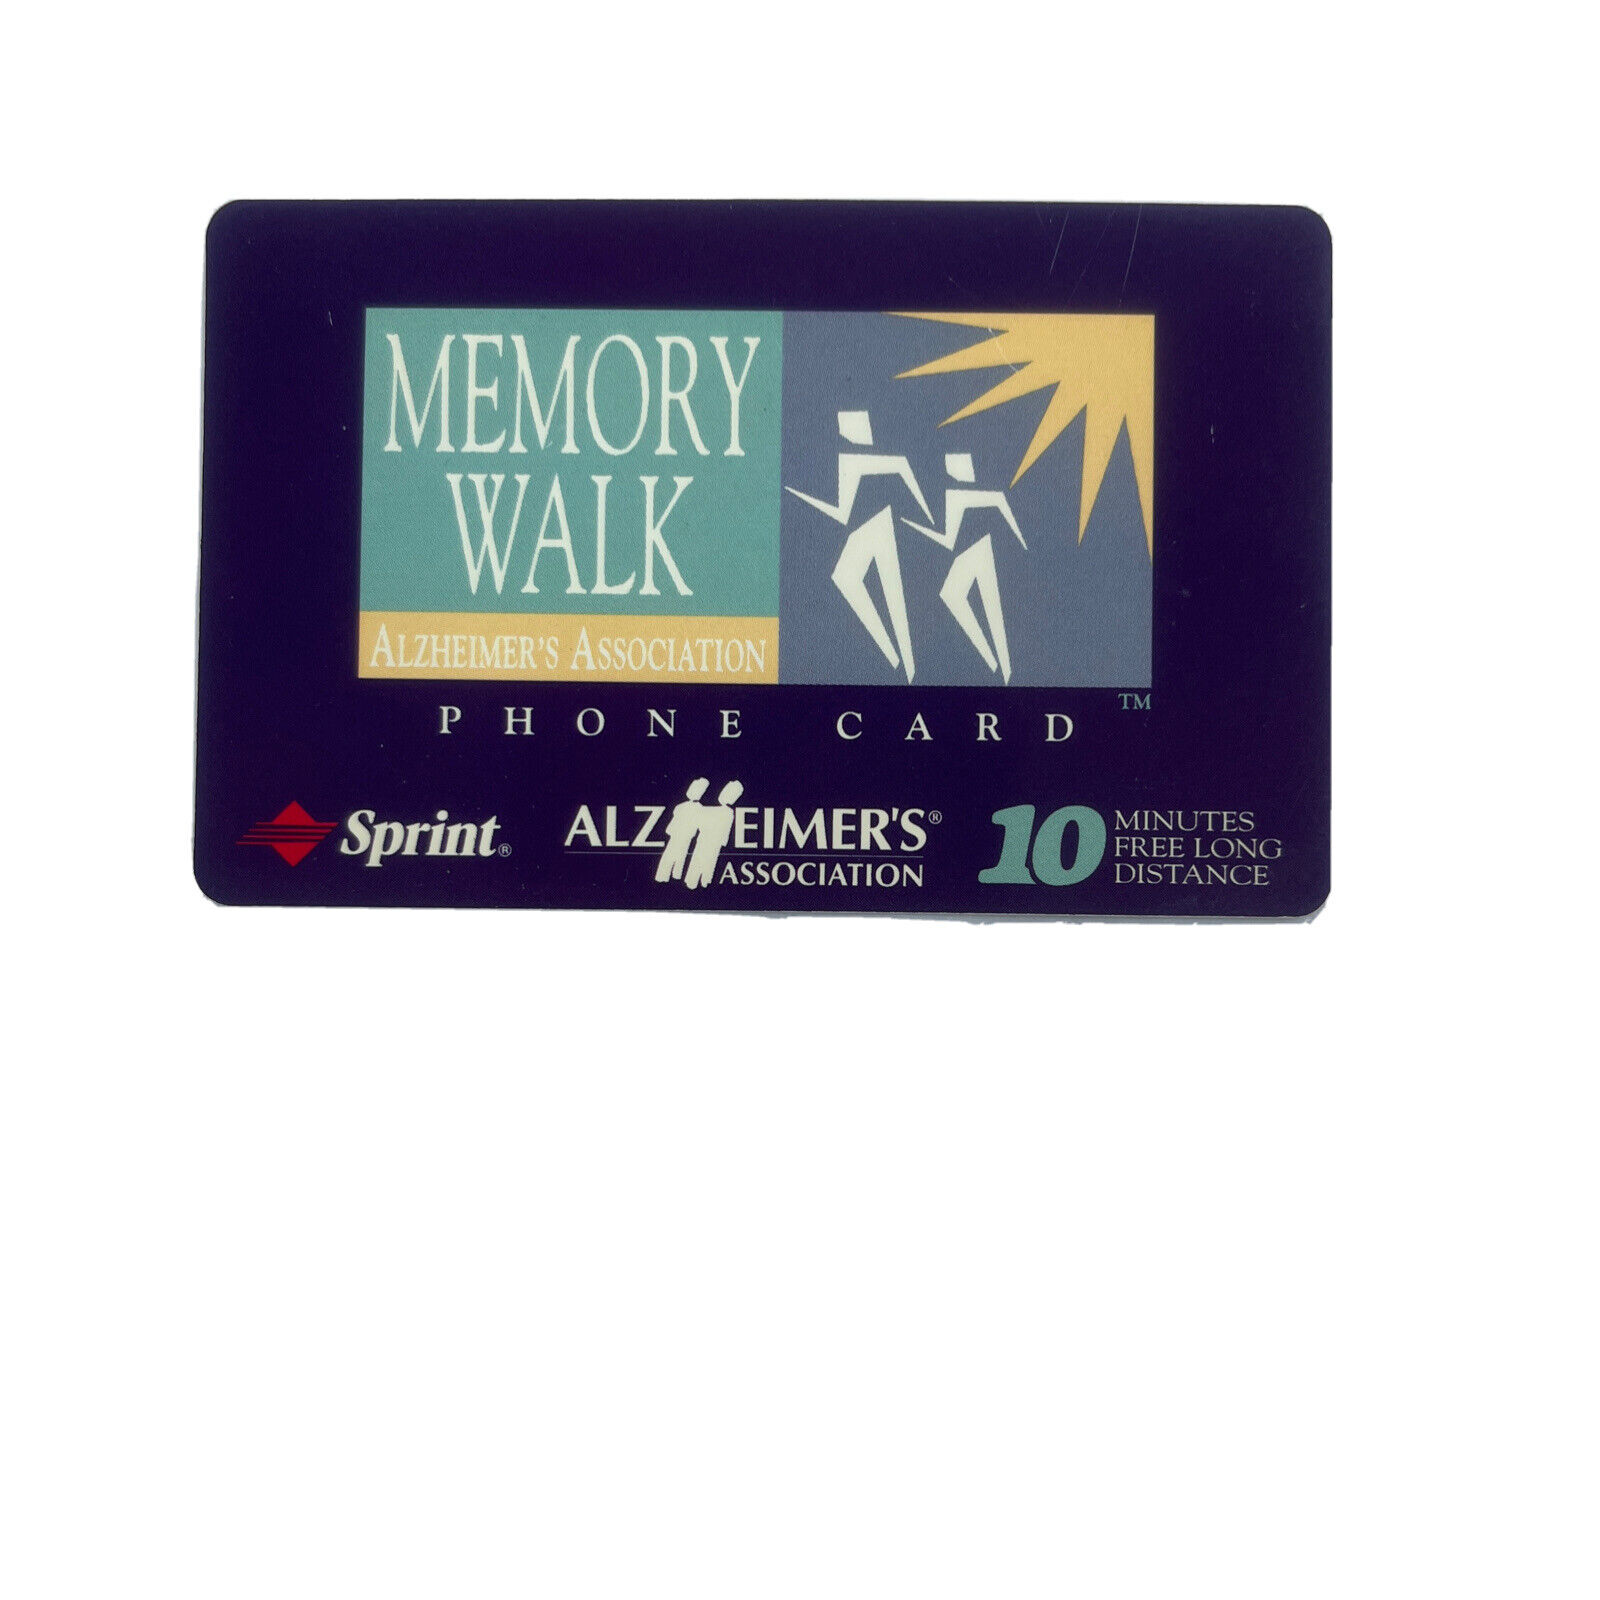 1997 Sprint Alzheimer’s Association Memory Walk Phone Card